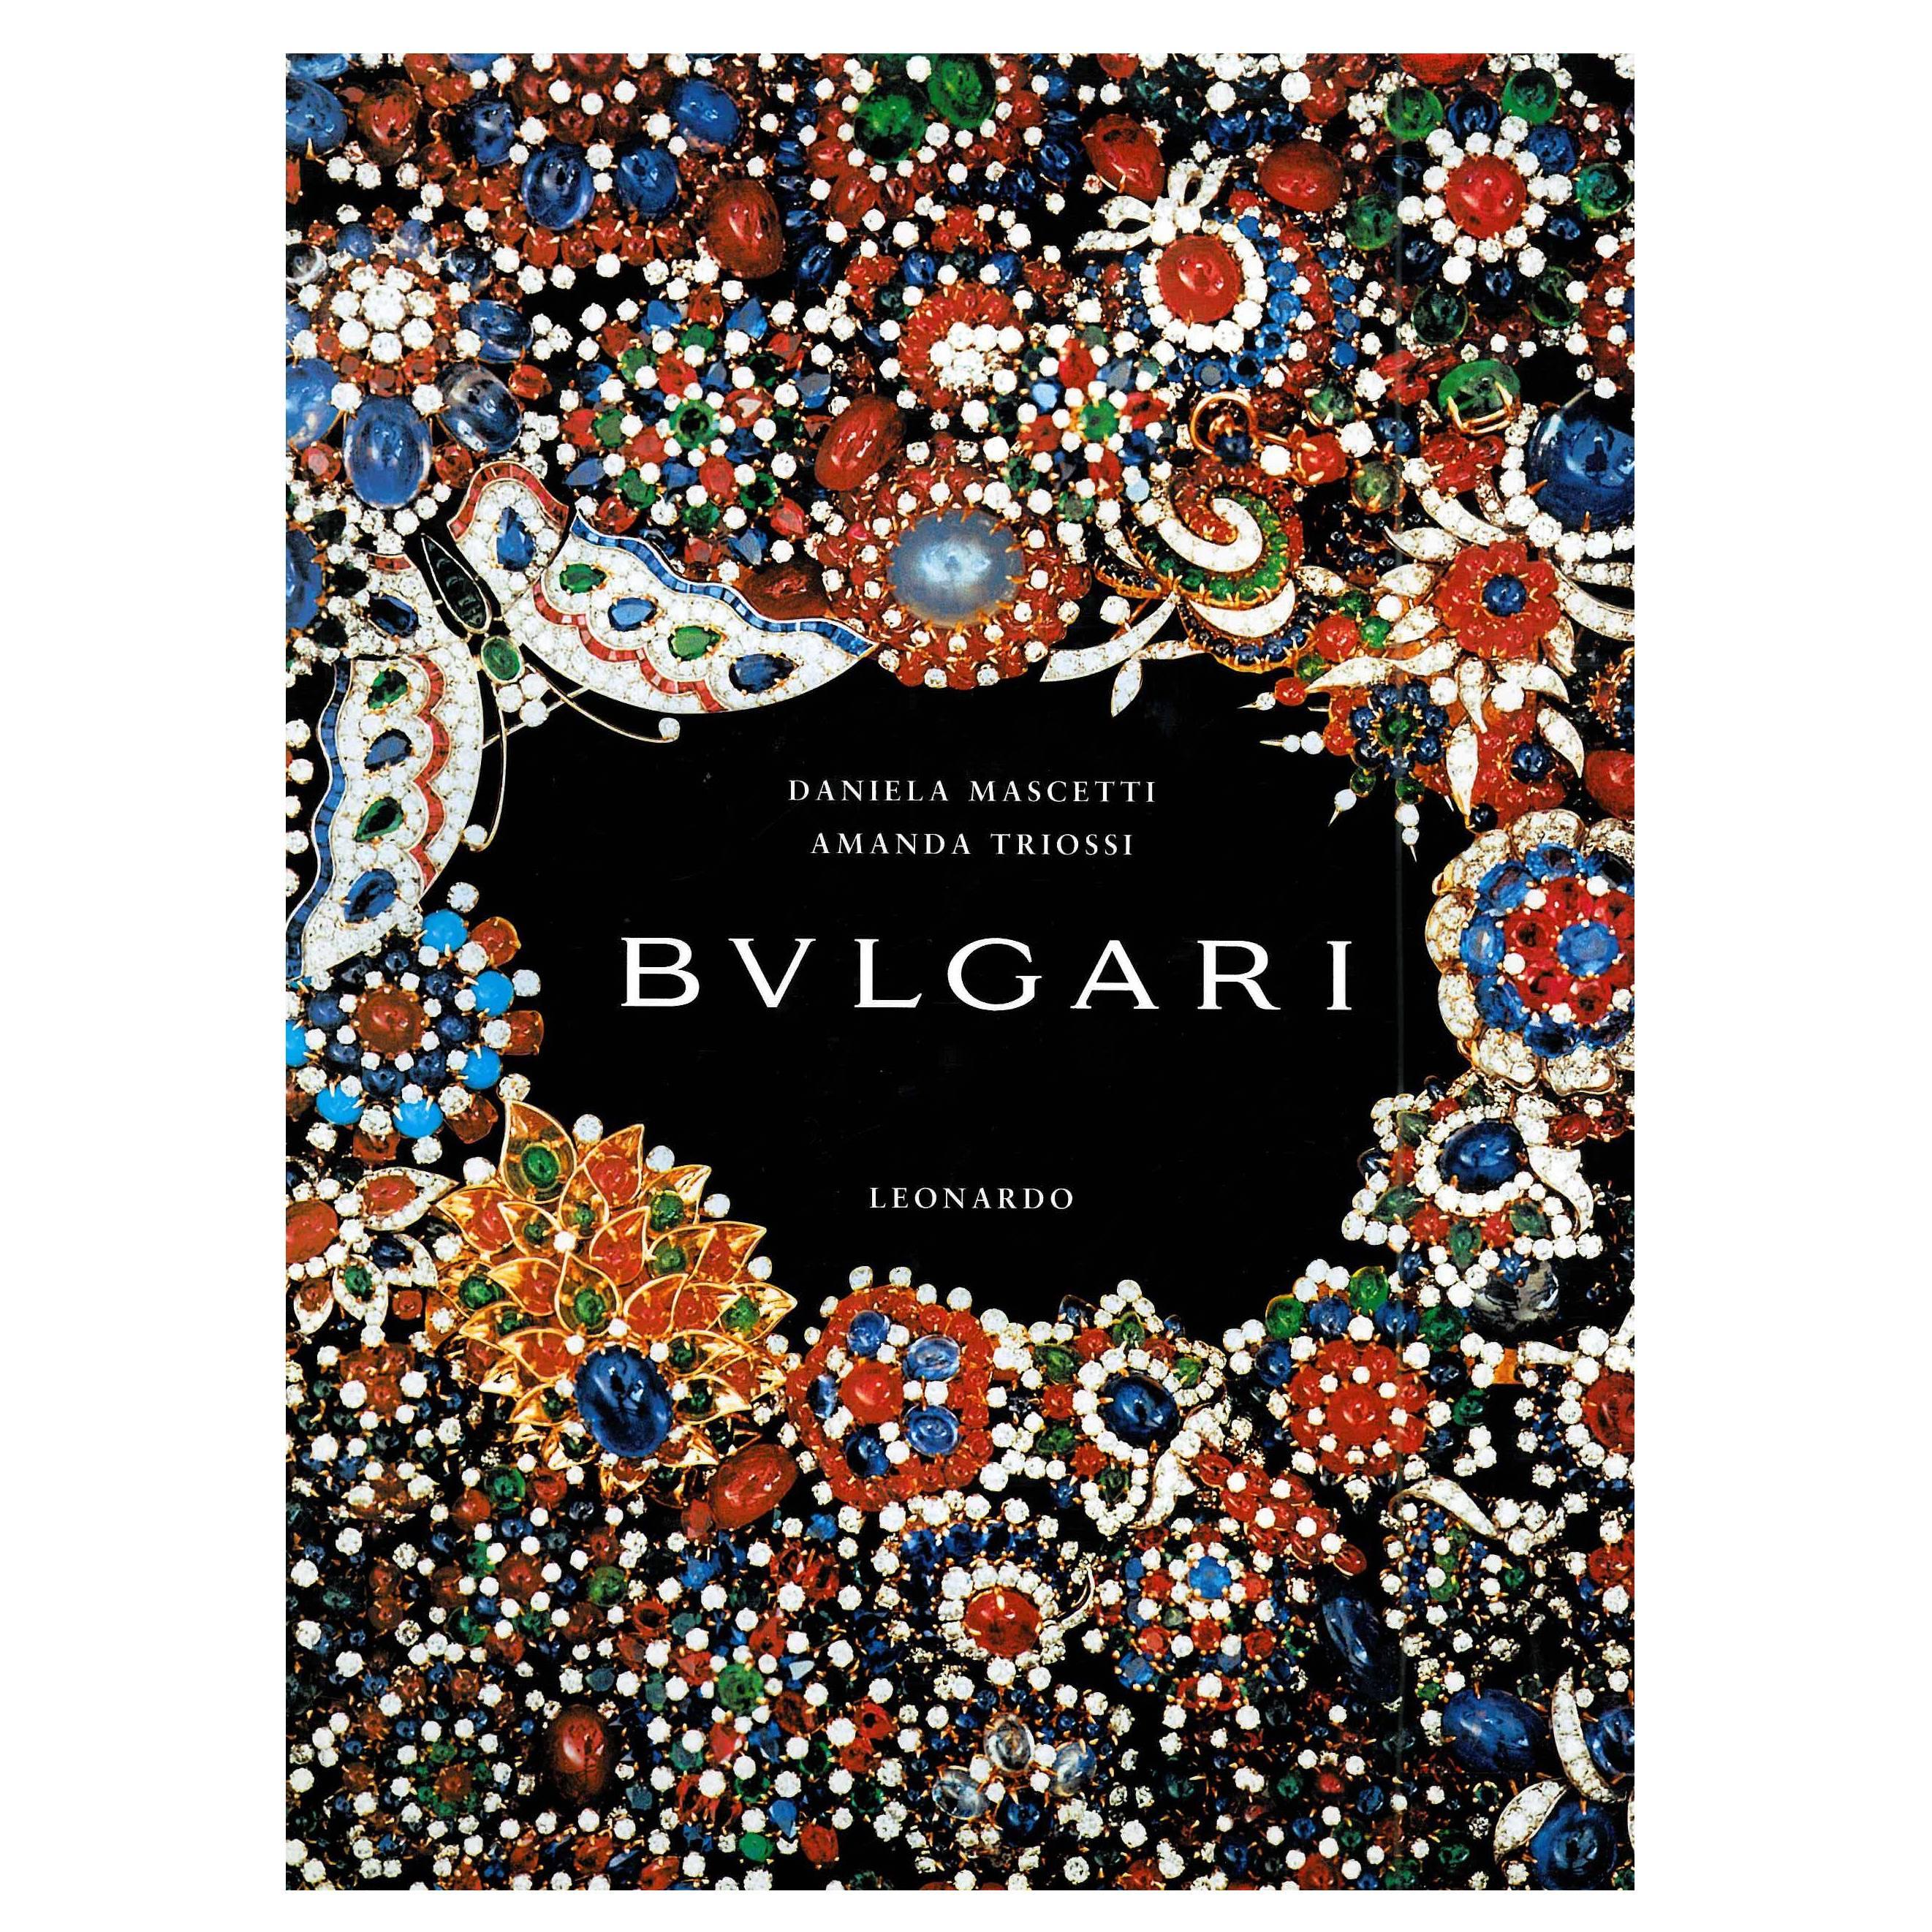 Bulgari (Book)